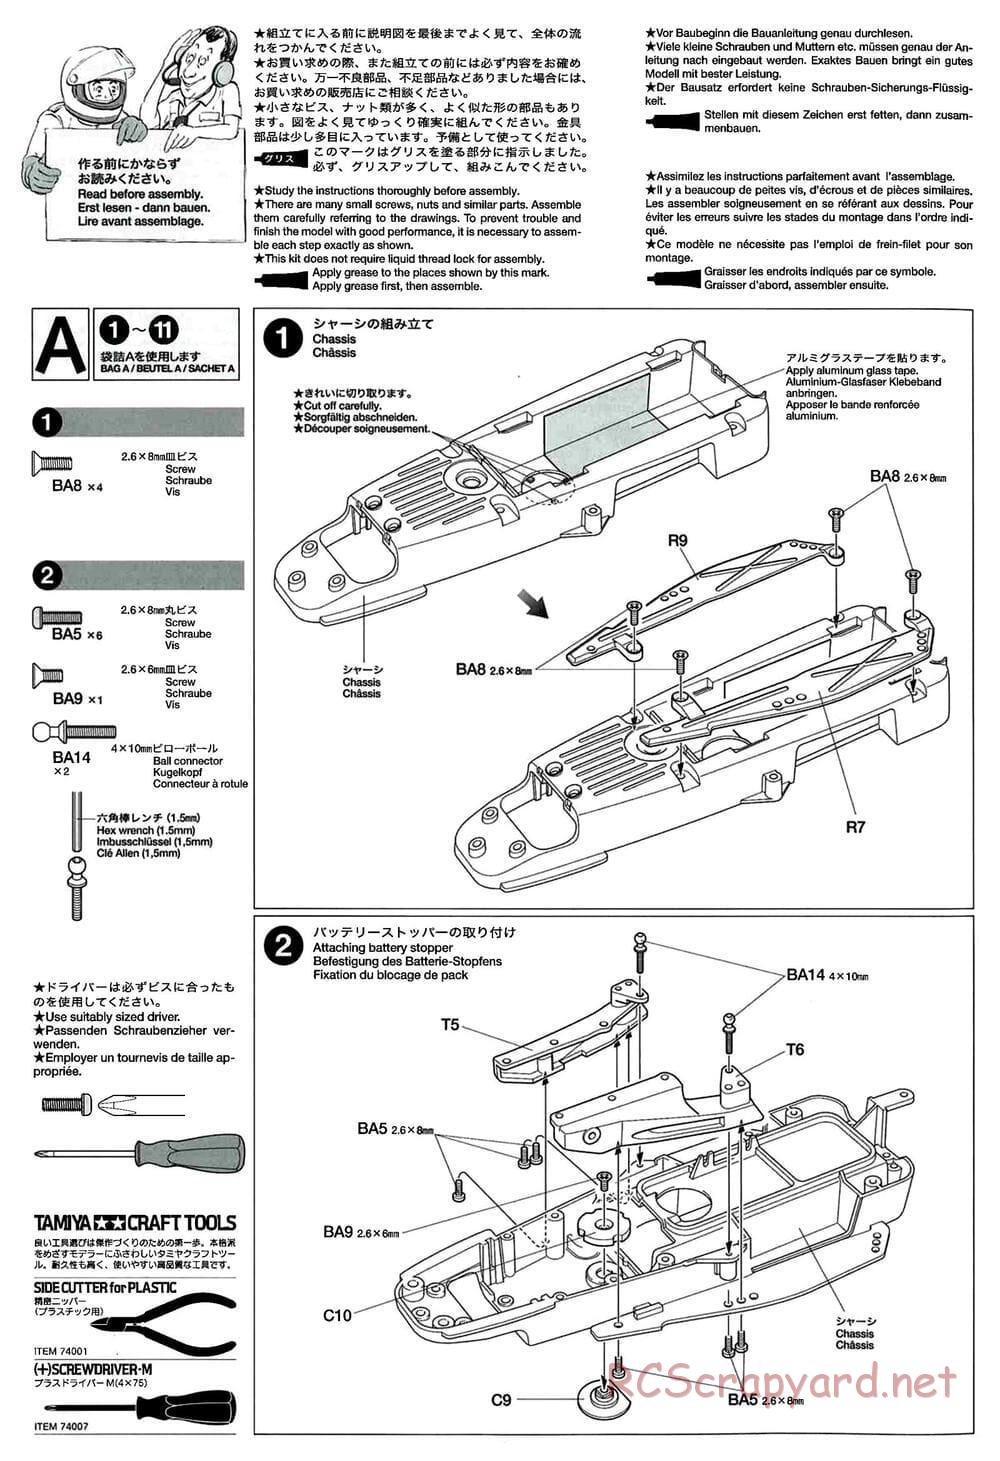 Tamiya - GT-01 Chassis - Manual - Page 4